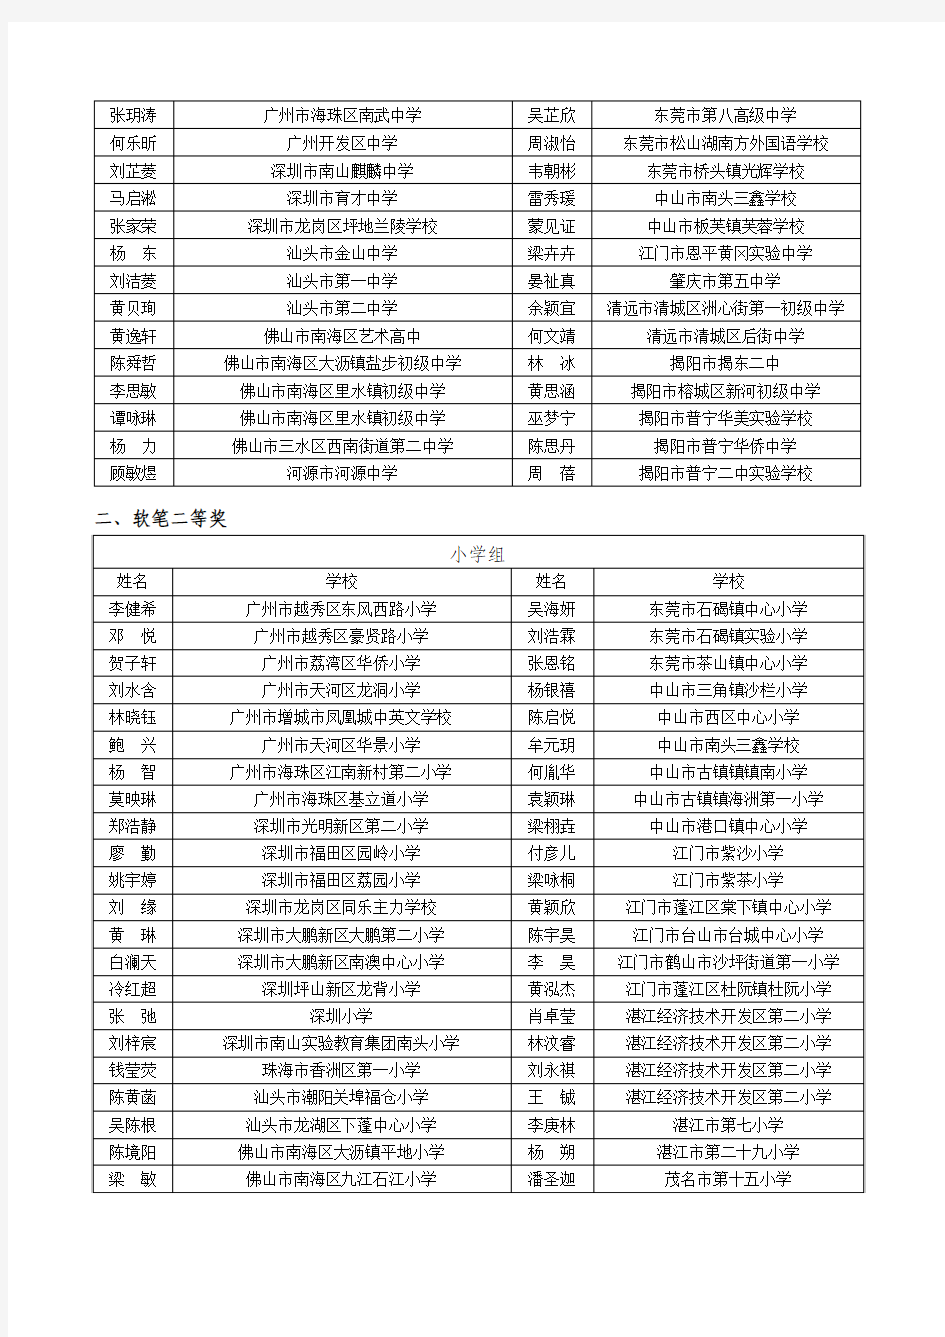 第六届广东省学生规范汉字书写大赛获奖名单